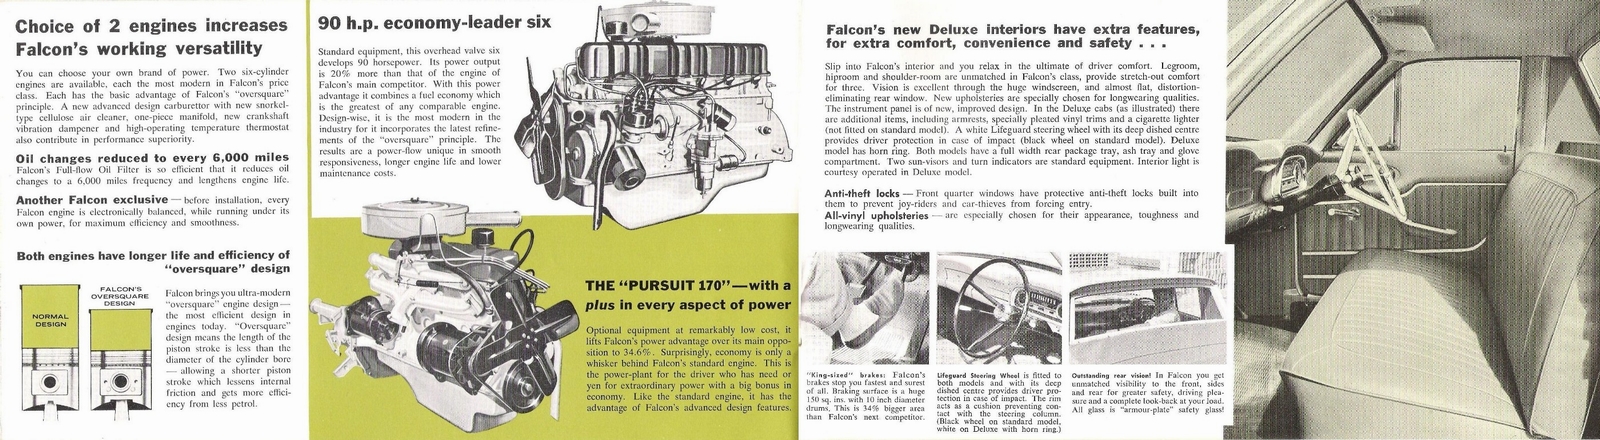 n_1962 Ford Falcon Utility-05-06.jpg